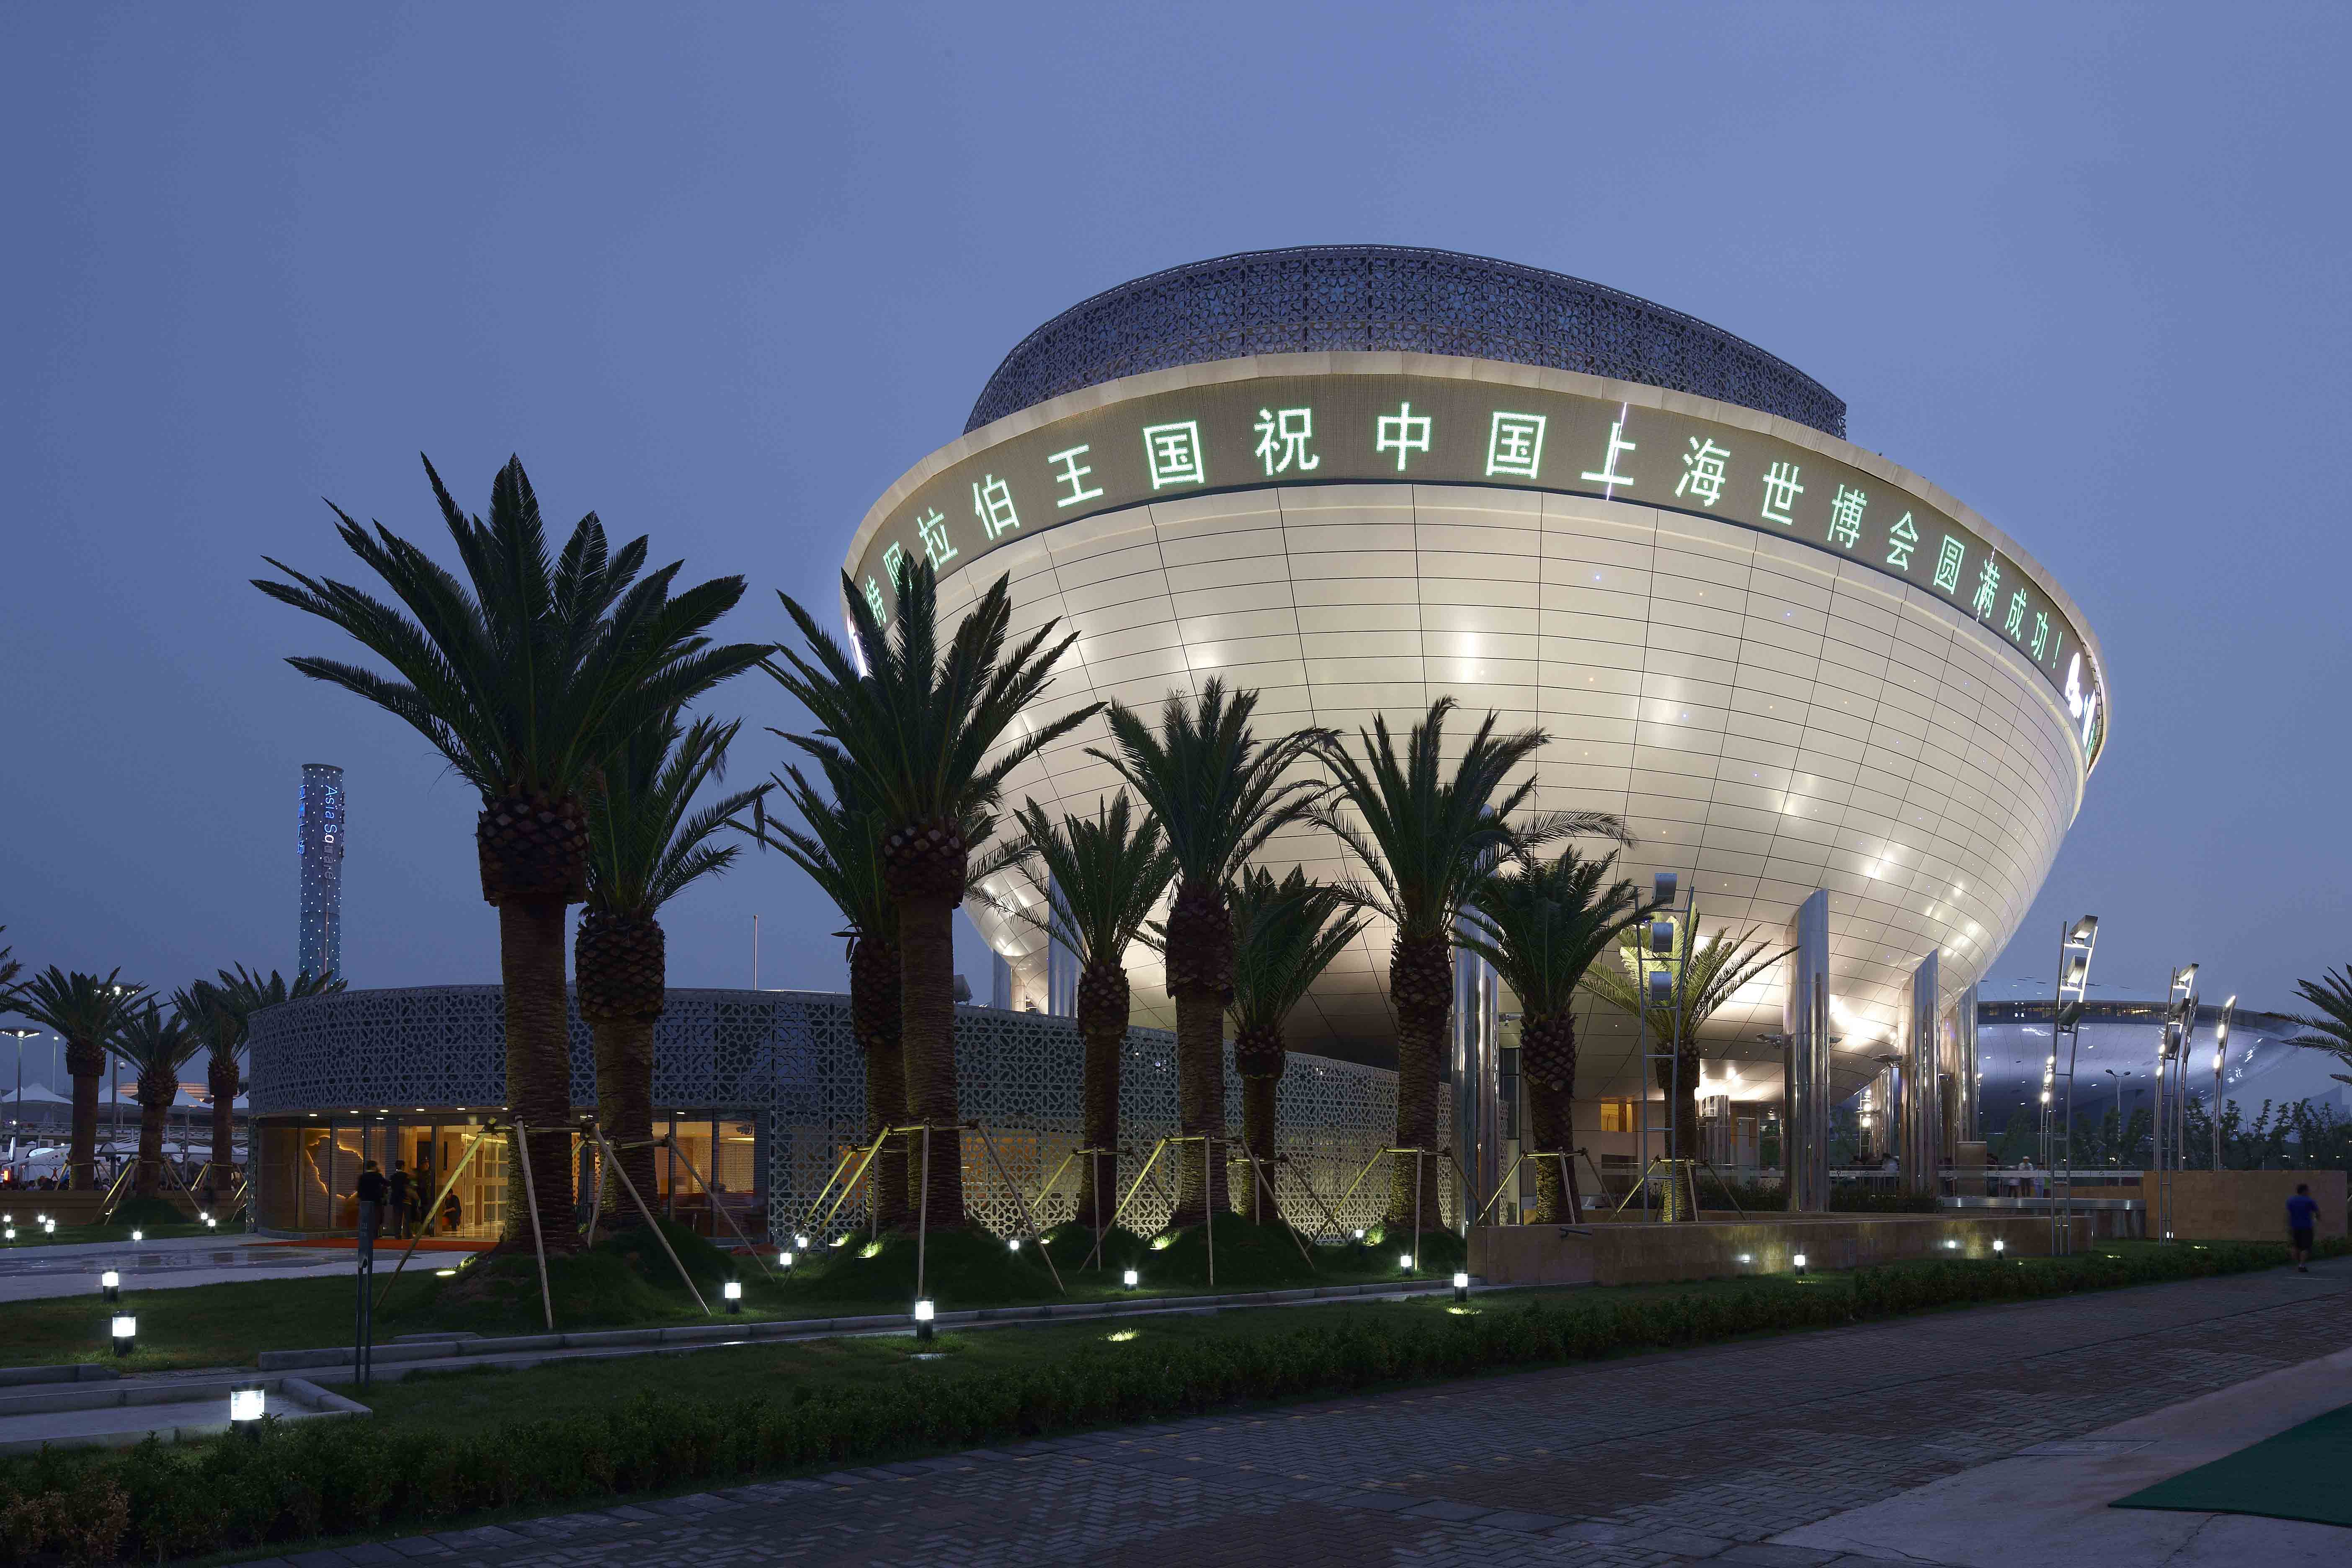 上海世博会沙特阿拉伯国家馆建筑泛光照明